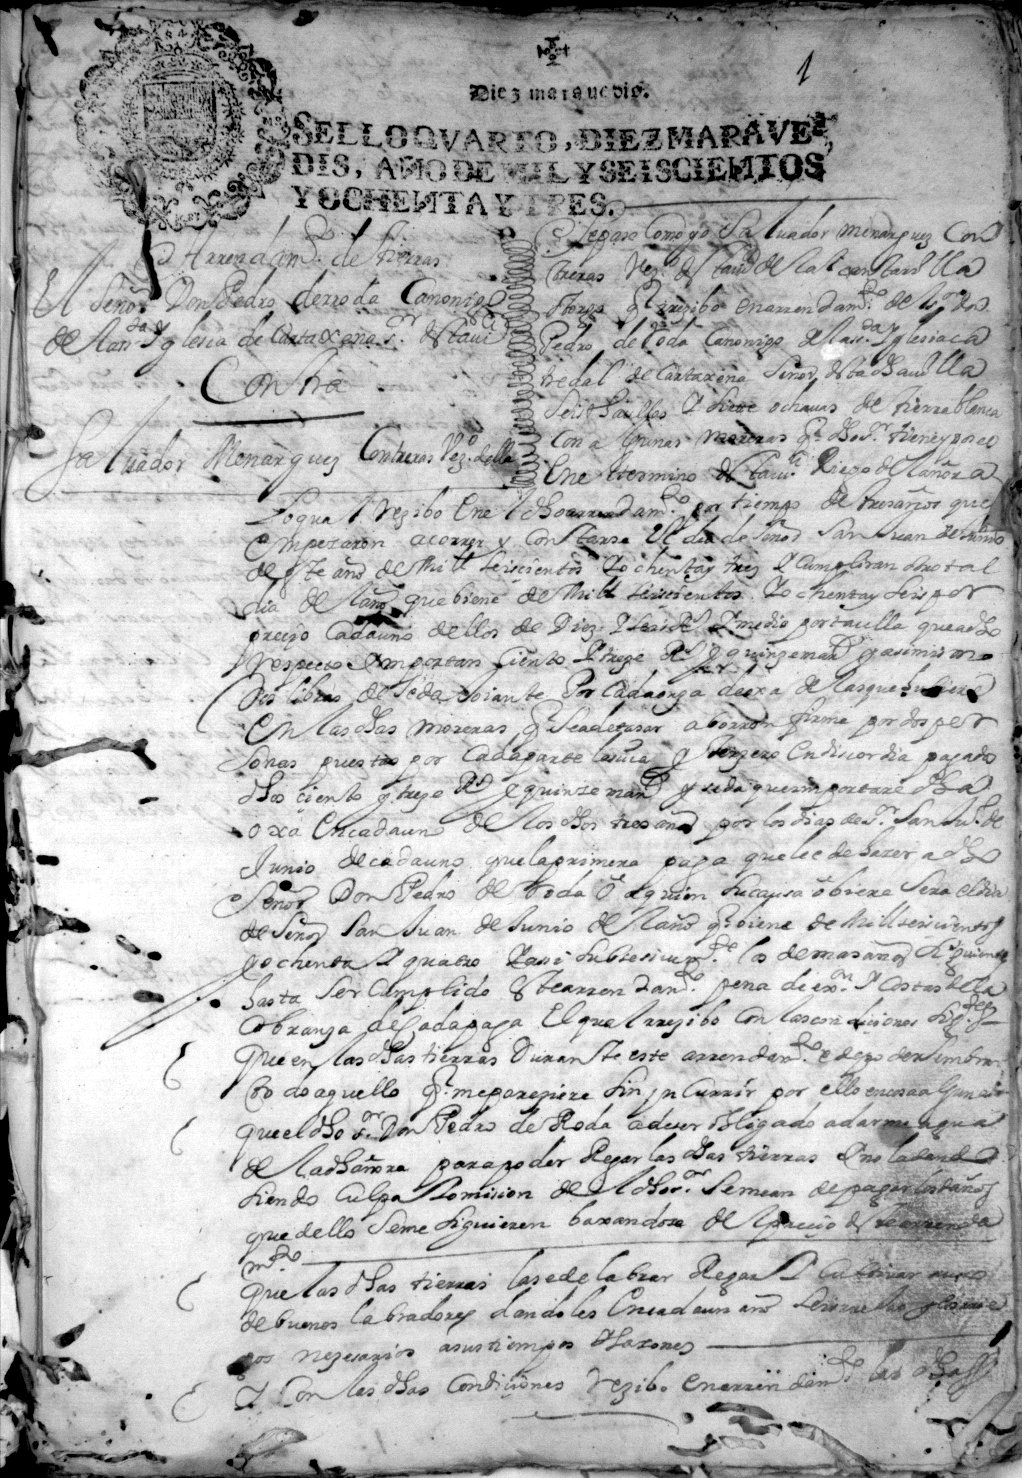 Registro de Francisco Martínez Yegros, Murcia de agosto a noviembre de 1683.